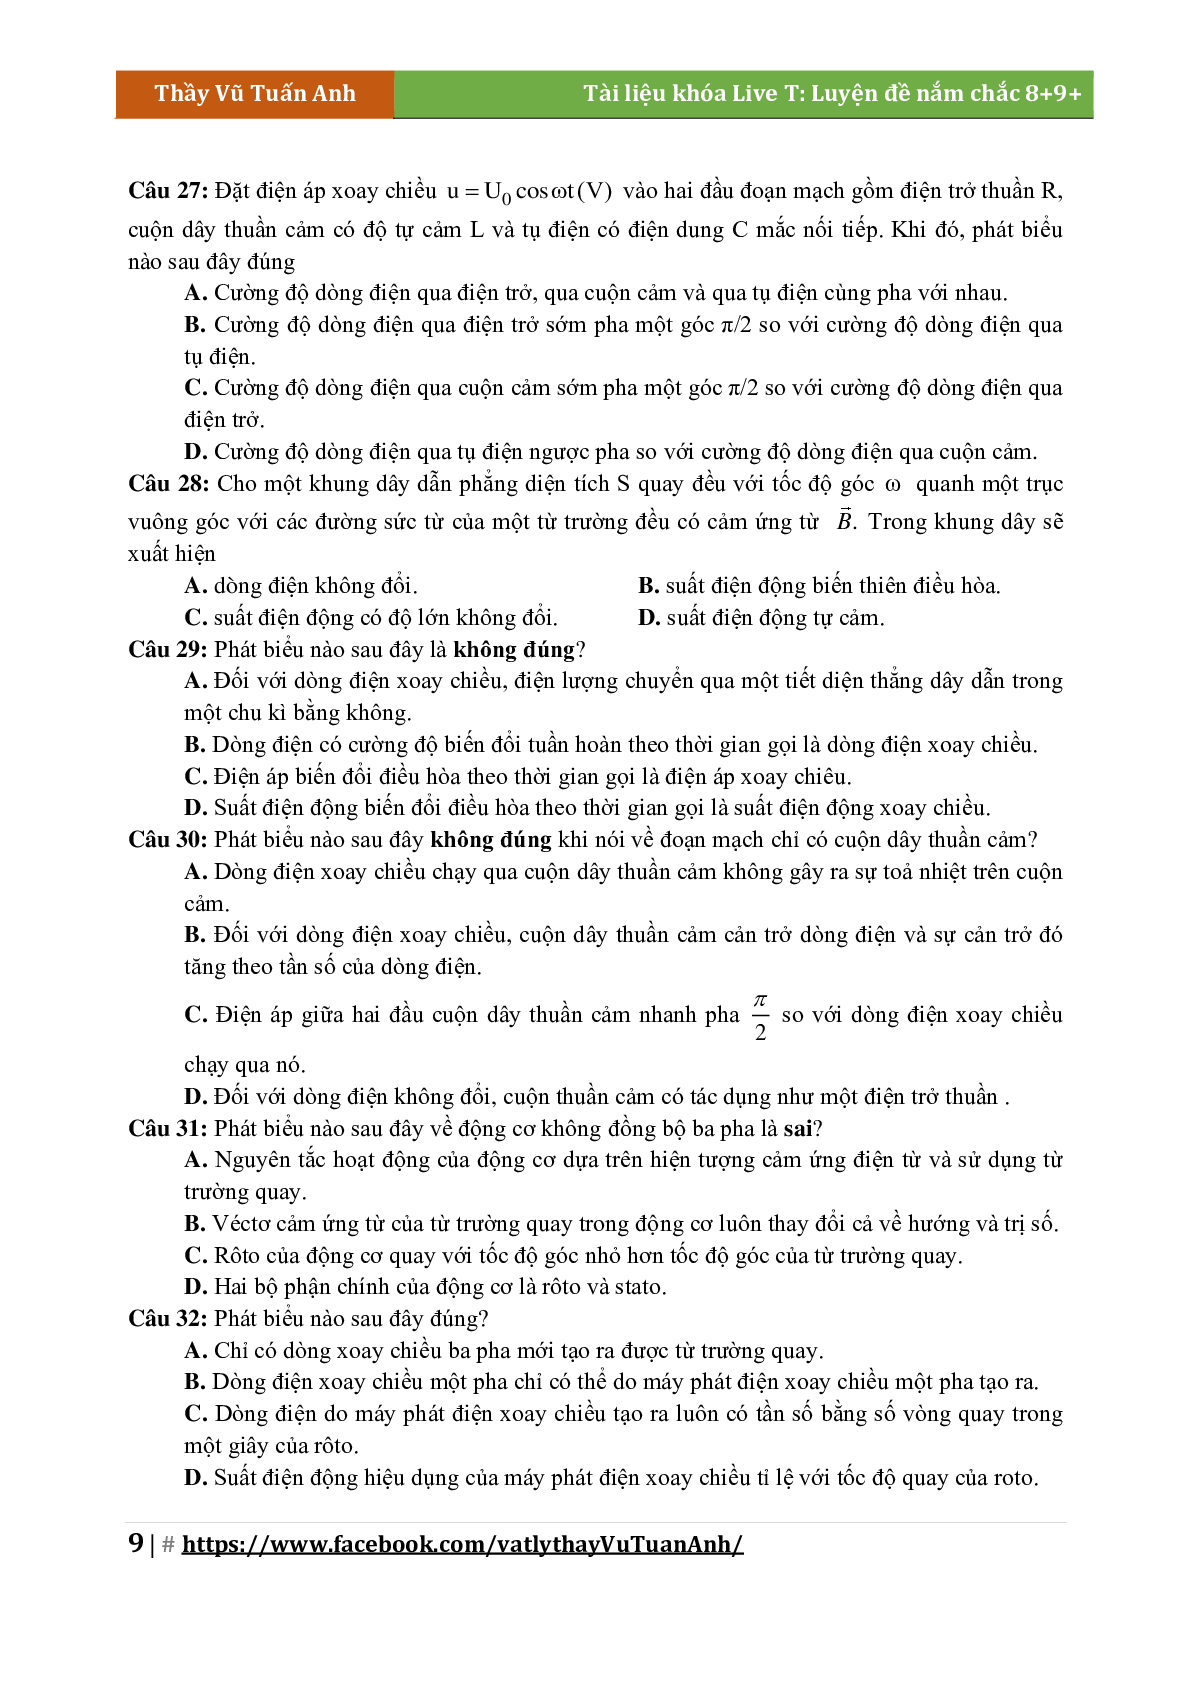 Lý Thuyết Chương Điện Xoay Chiều Môn Vật Lý Lớp 12 (trang 9)